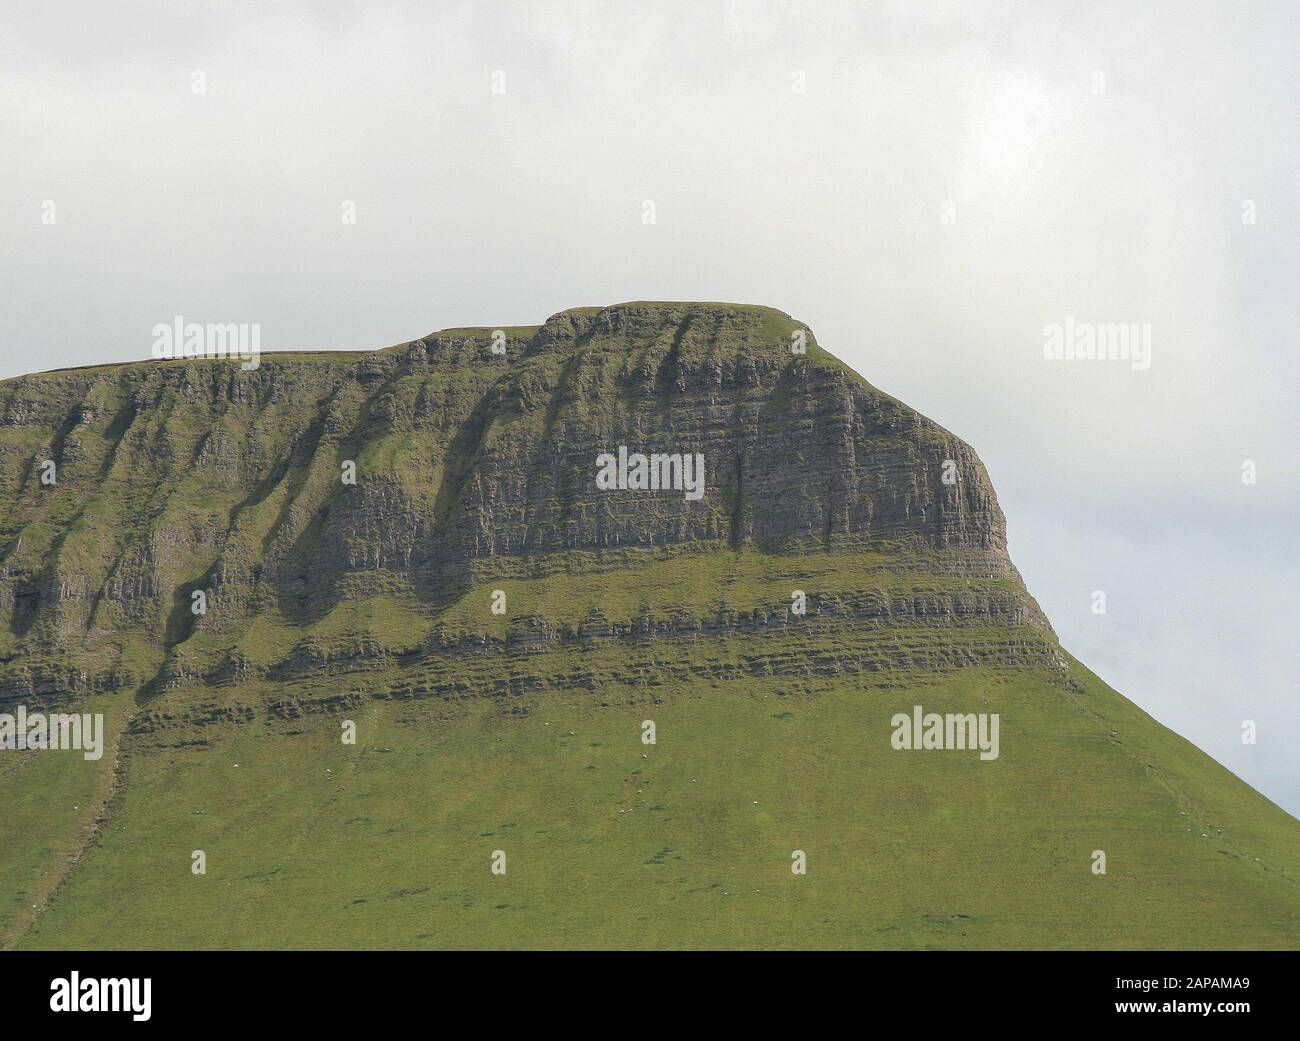 Kalkfelsen auf einem von Gletschern behauenen Berg in Irland - die Dartry Kalksteinformation auf der Nordseite von Ben Bulben oder Benbulbin in Co Sligo. Stockfoto